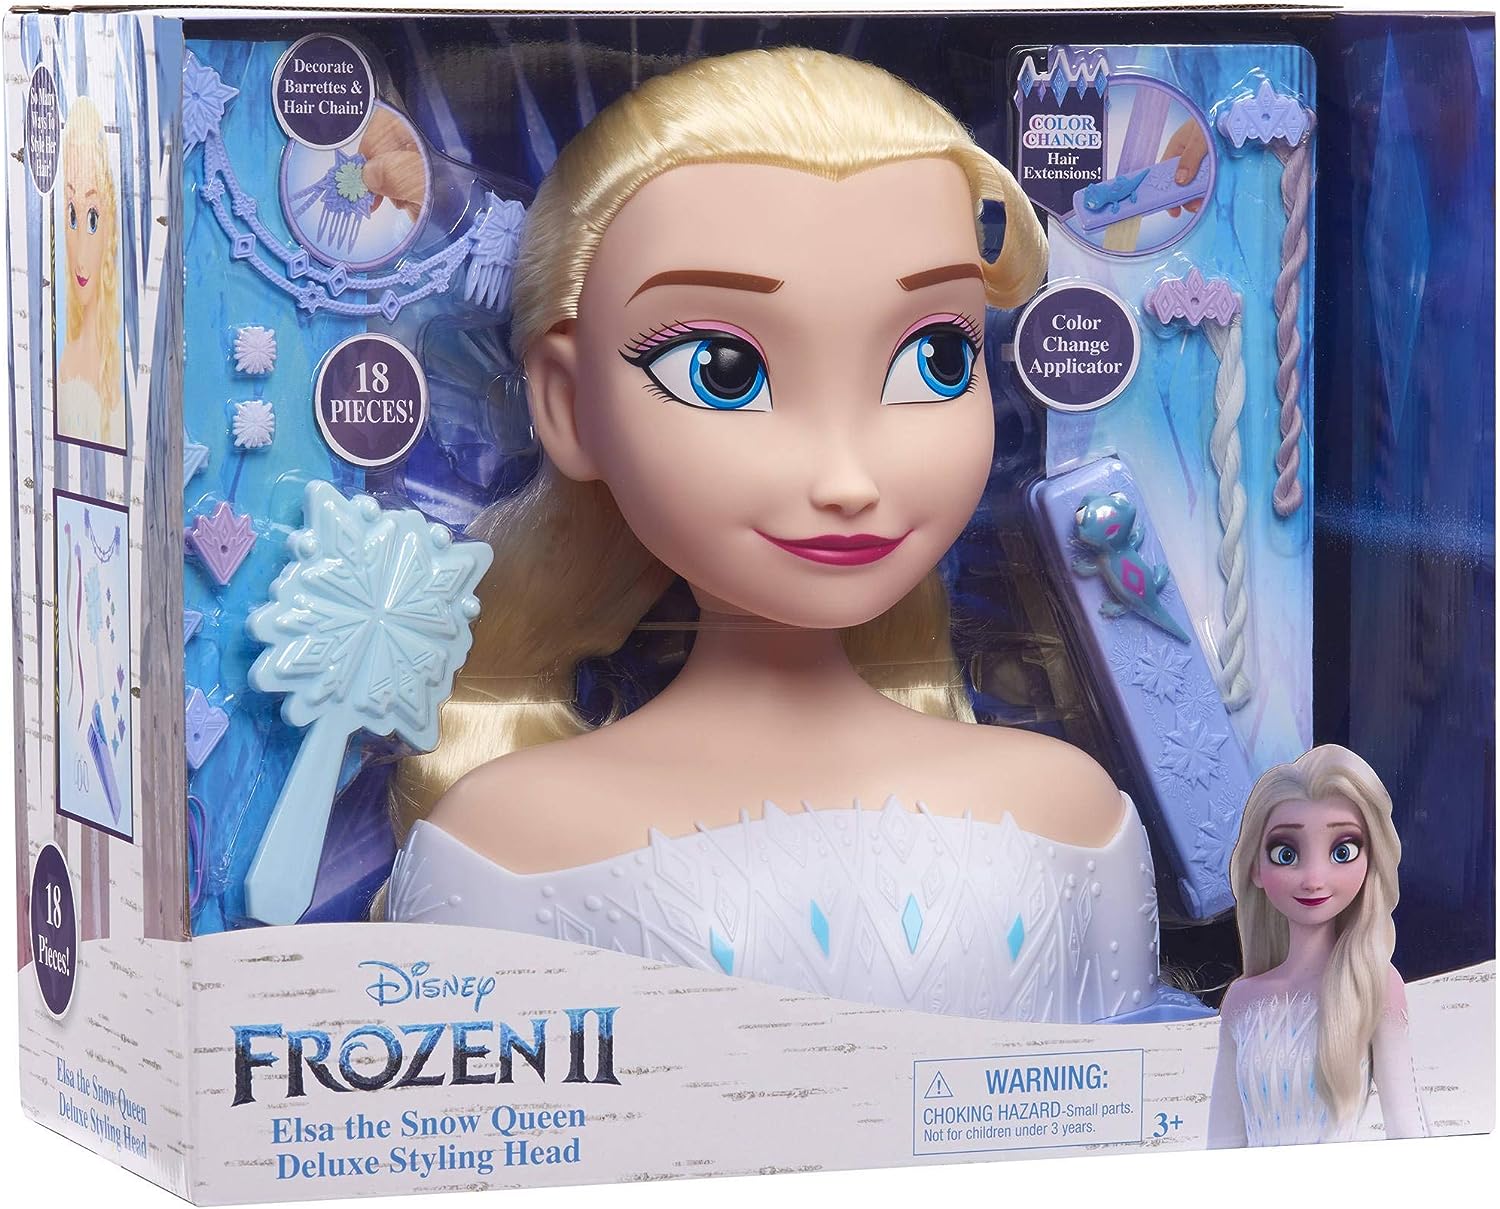 Disney La Reine des Neiges - Tête à Coiffer Elsa